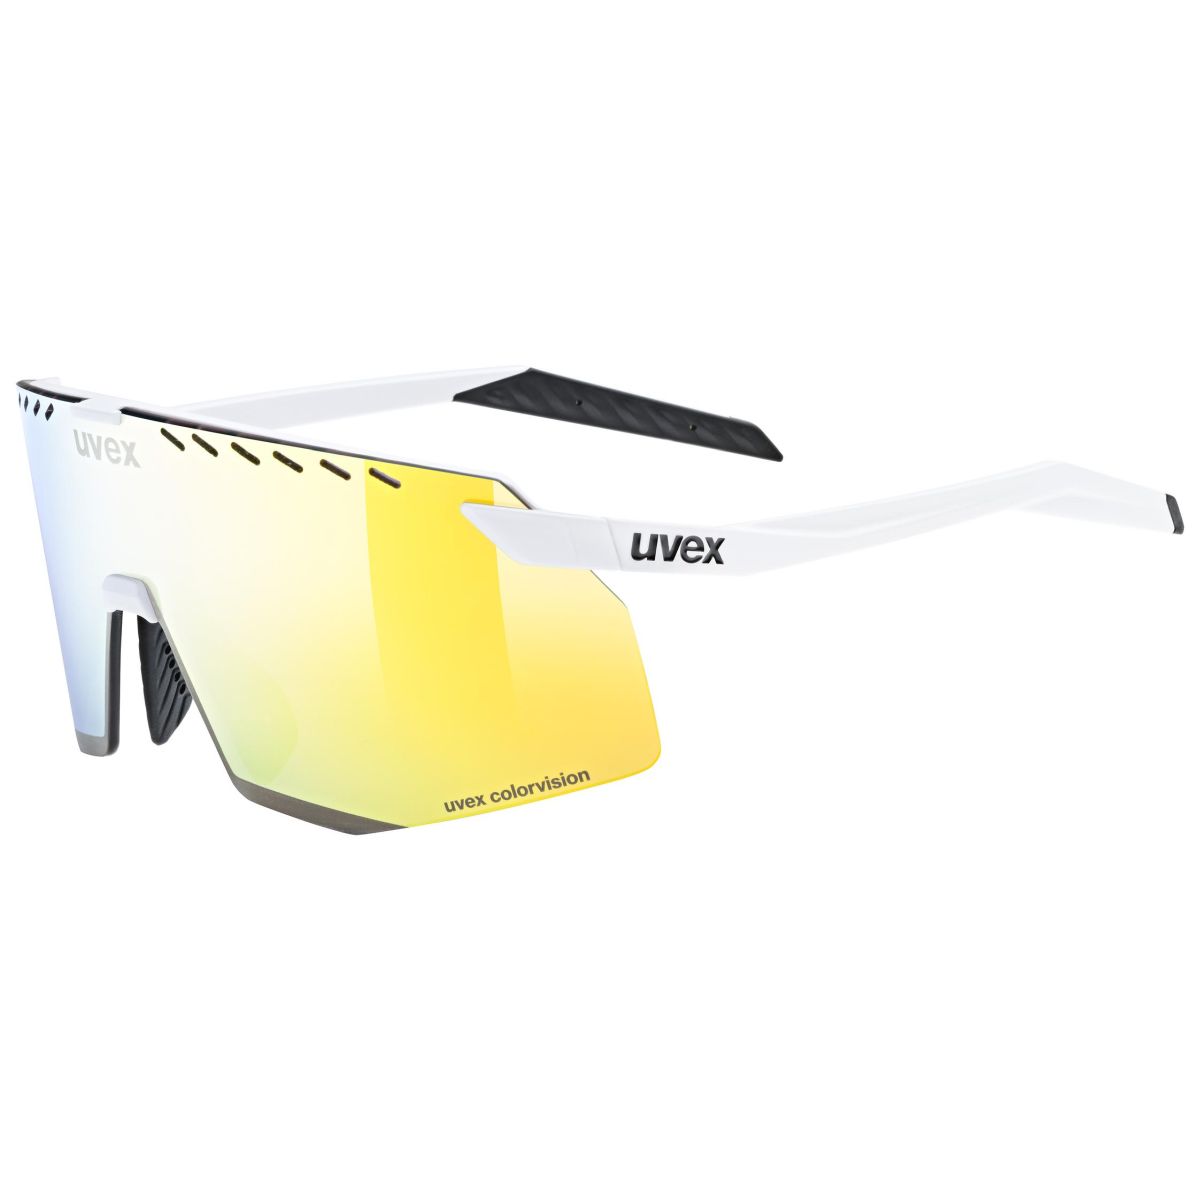 Produktbild von Uvex pace stage CV Brille - white matt/mirror yellow colorvision